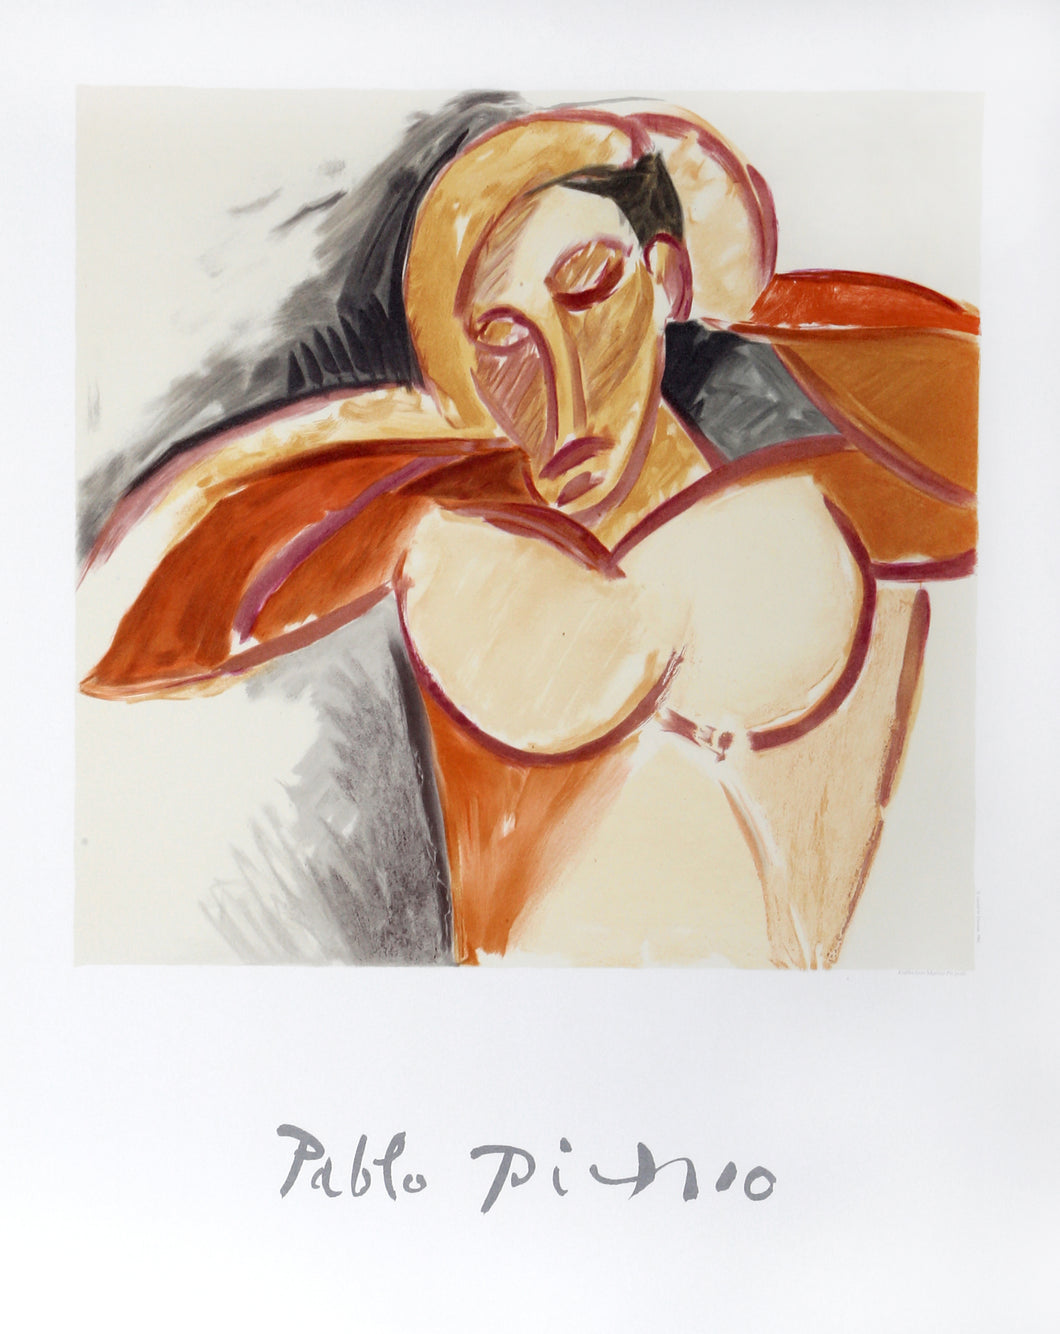 Pablo Picasso, Buste d'Homme, 13-A-k, Lithograph